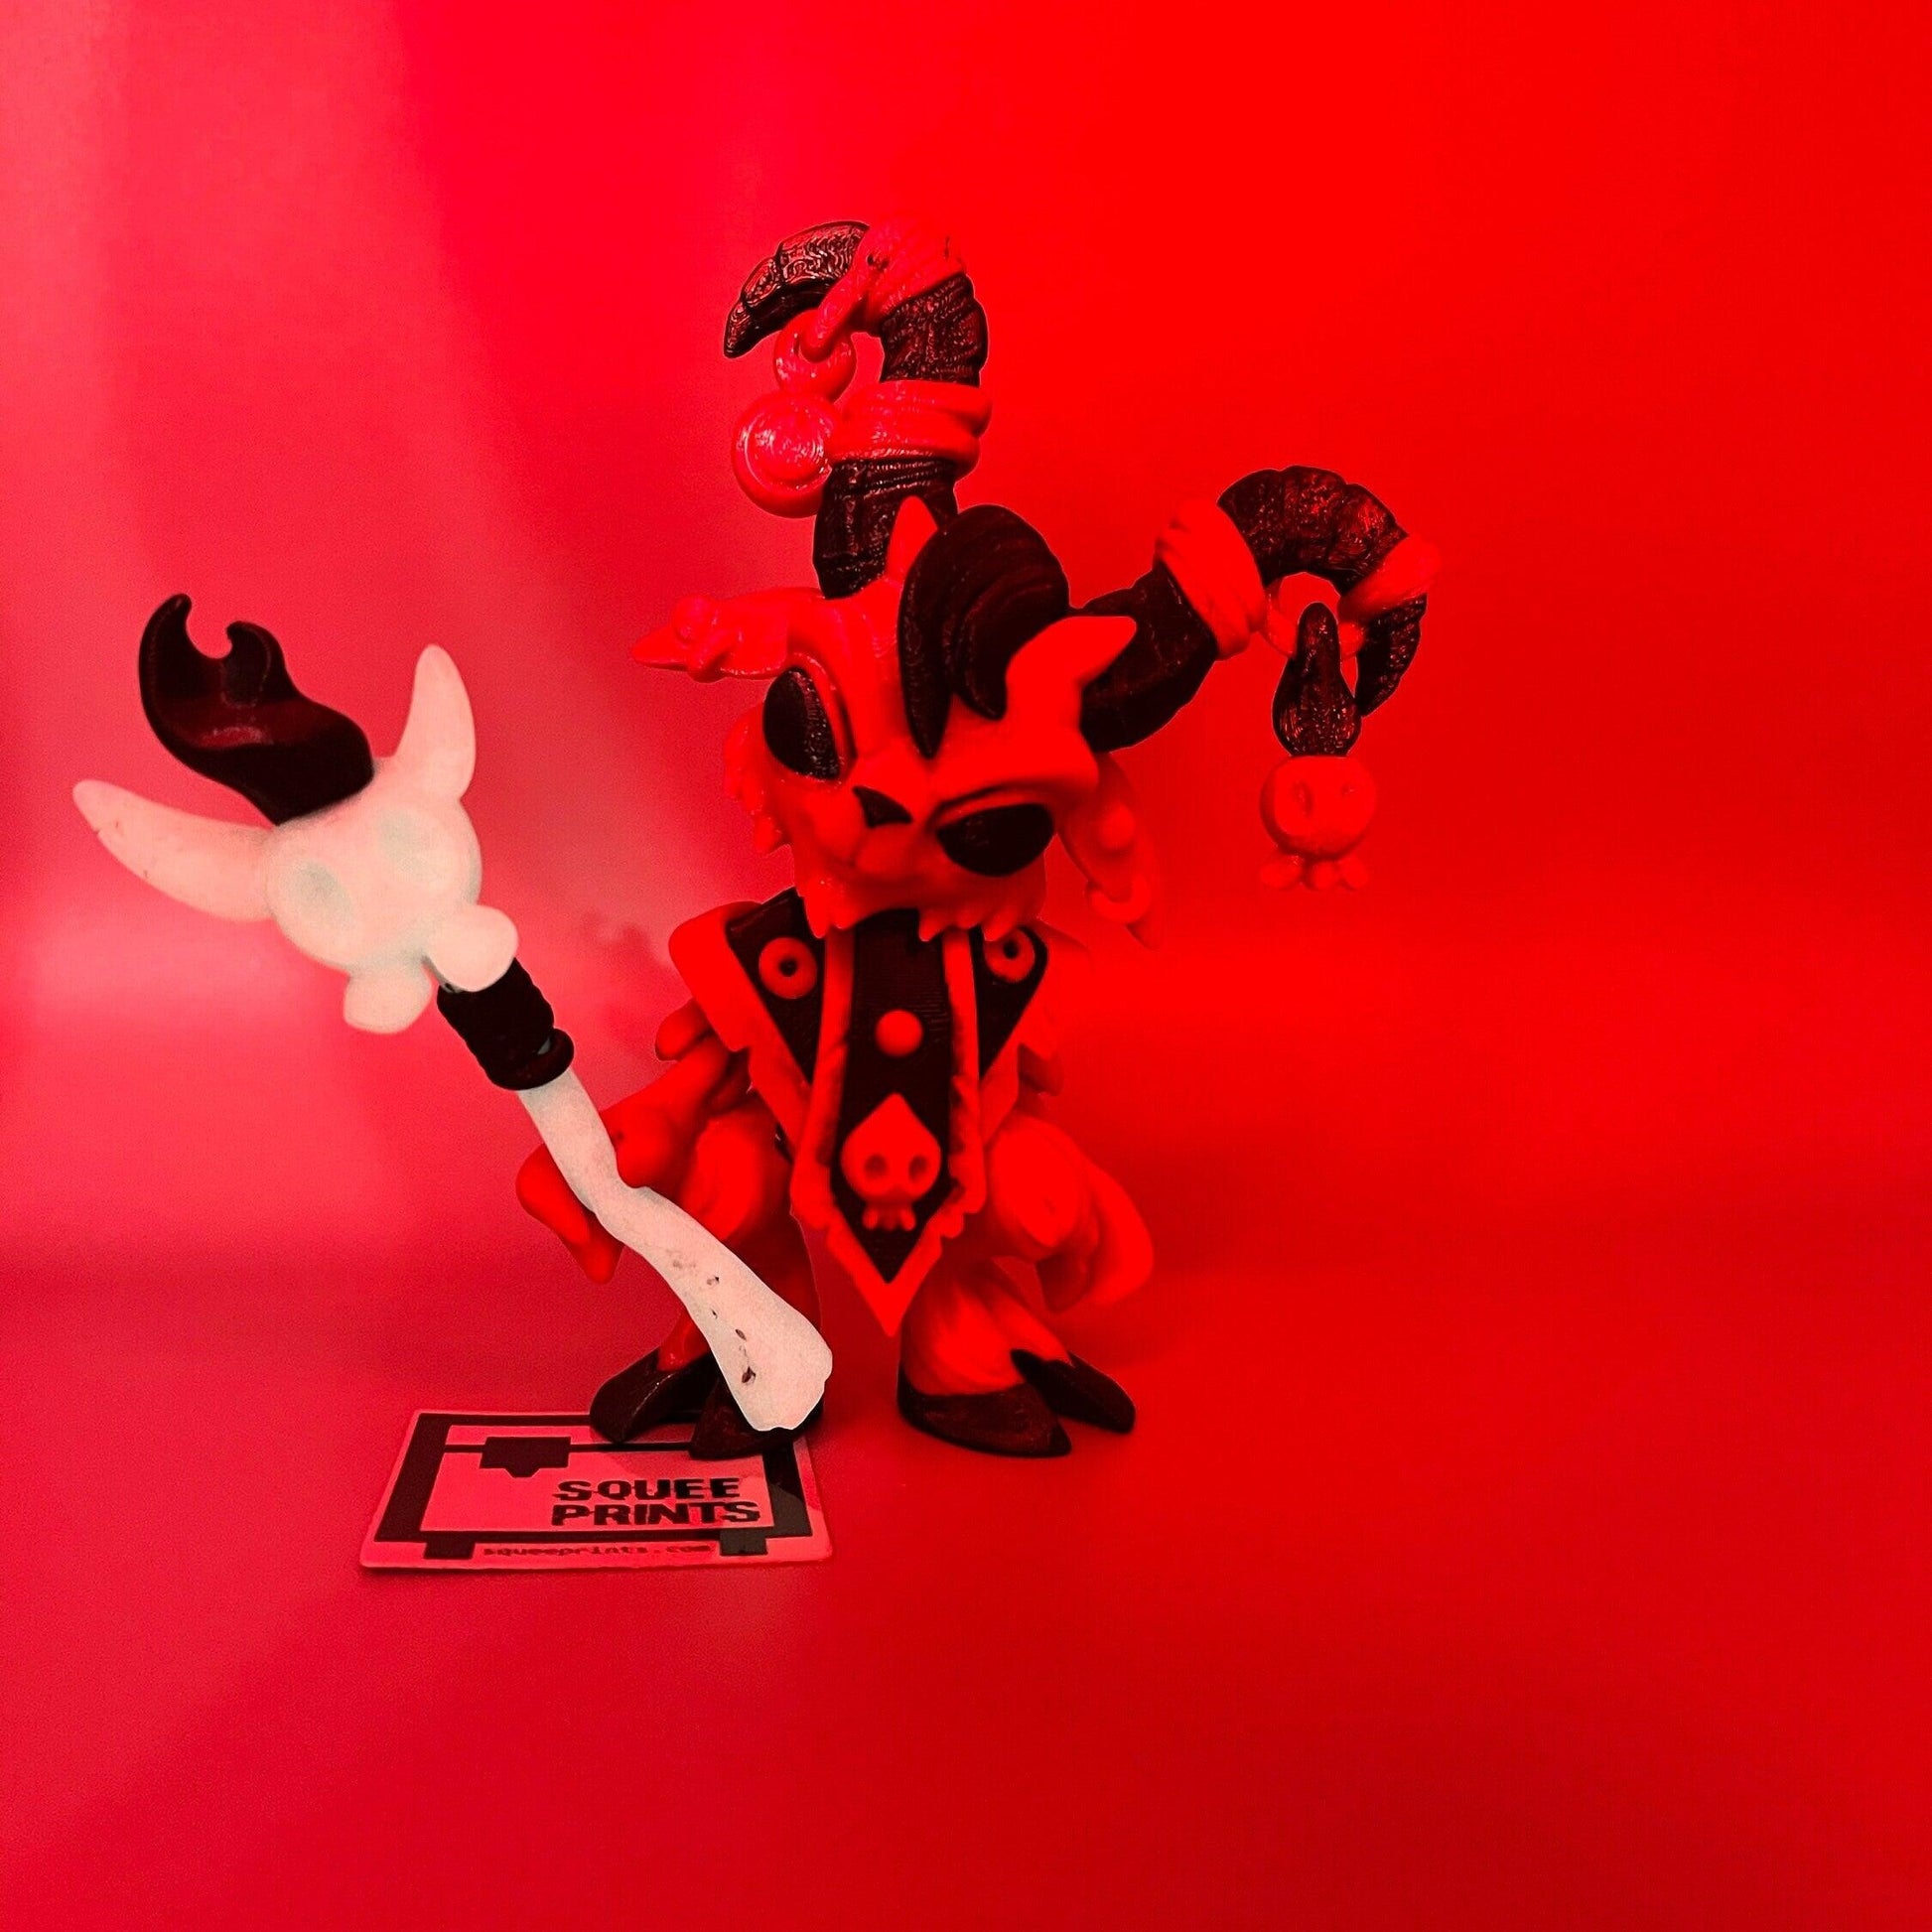 Baphomet Hellspawn Goat | 3D Printed | Glow in the Dark - Squee Prints